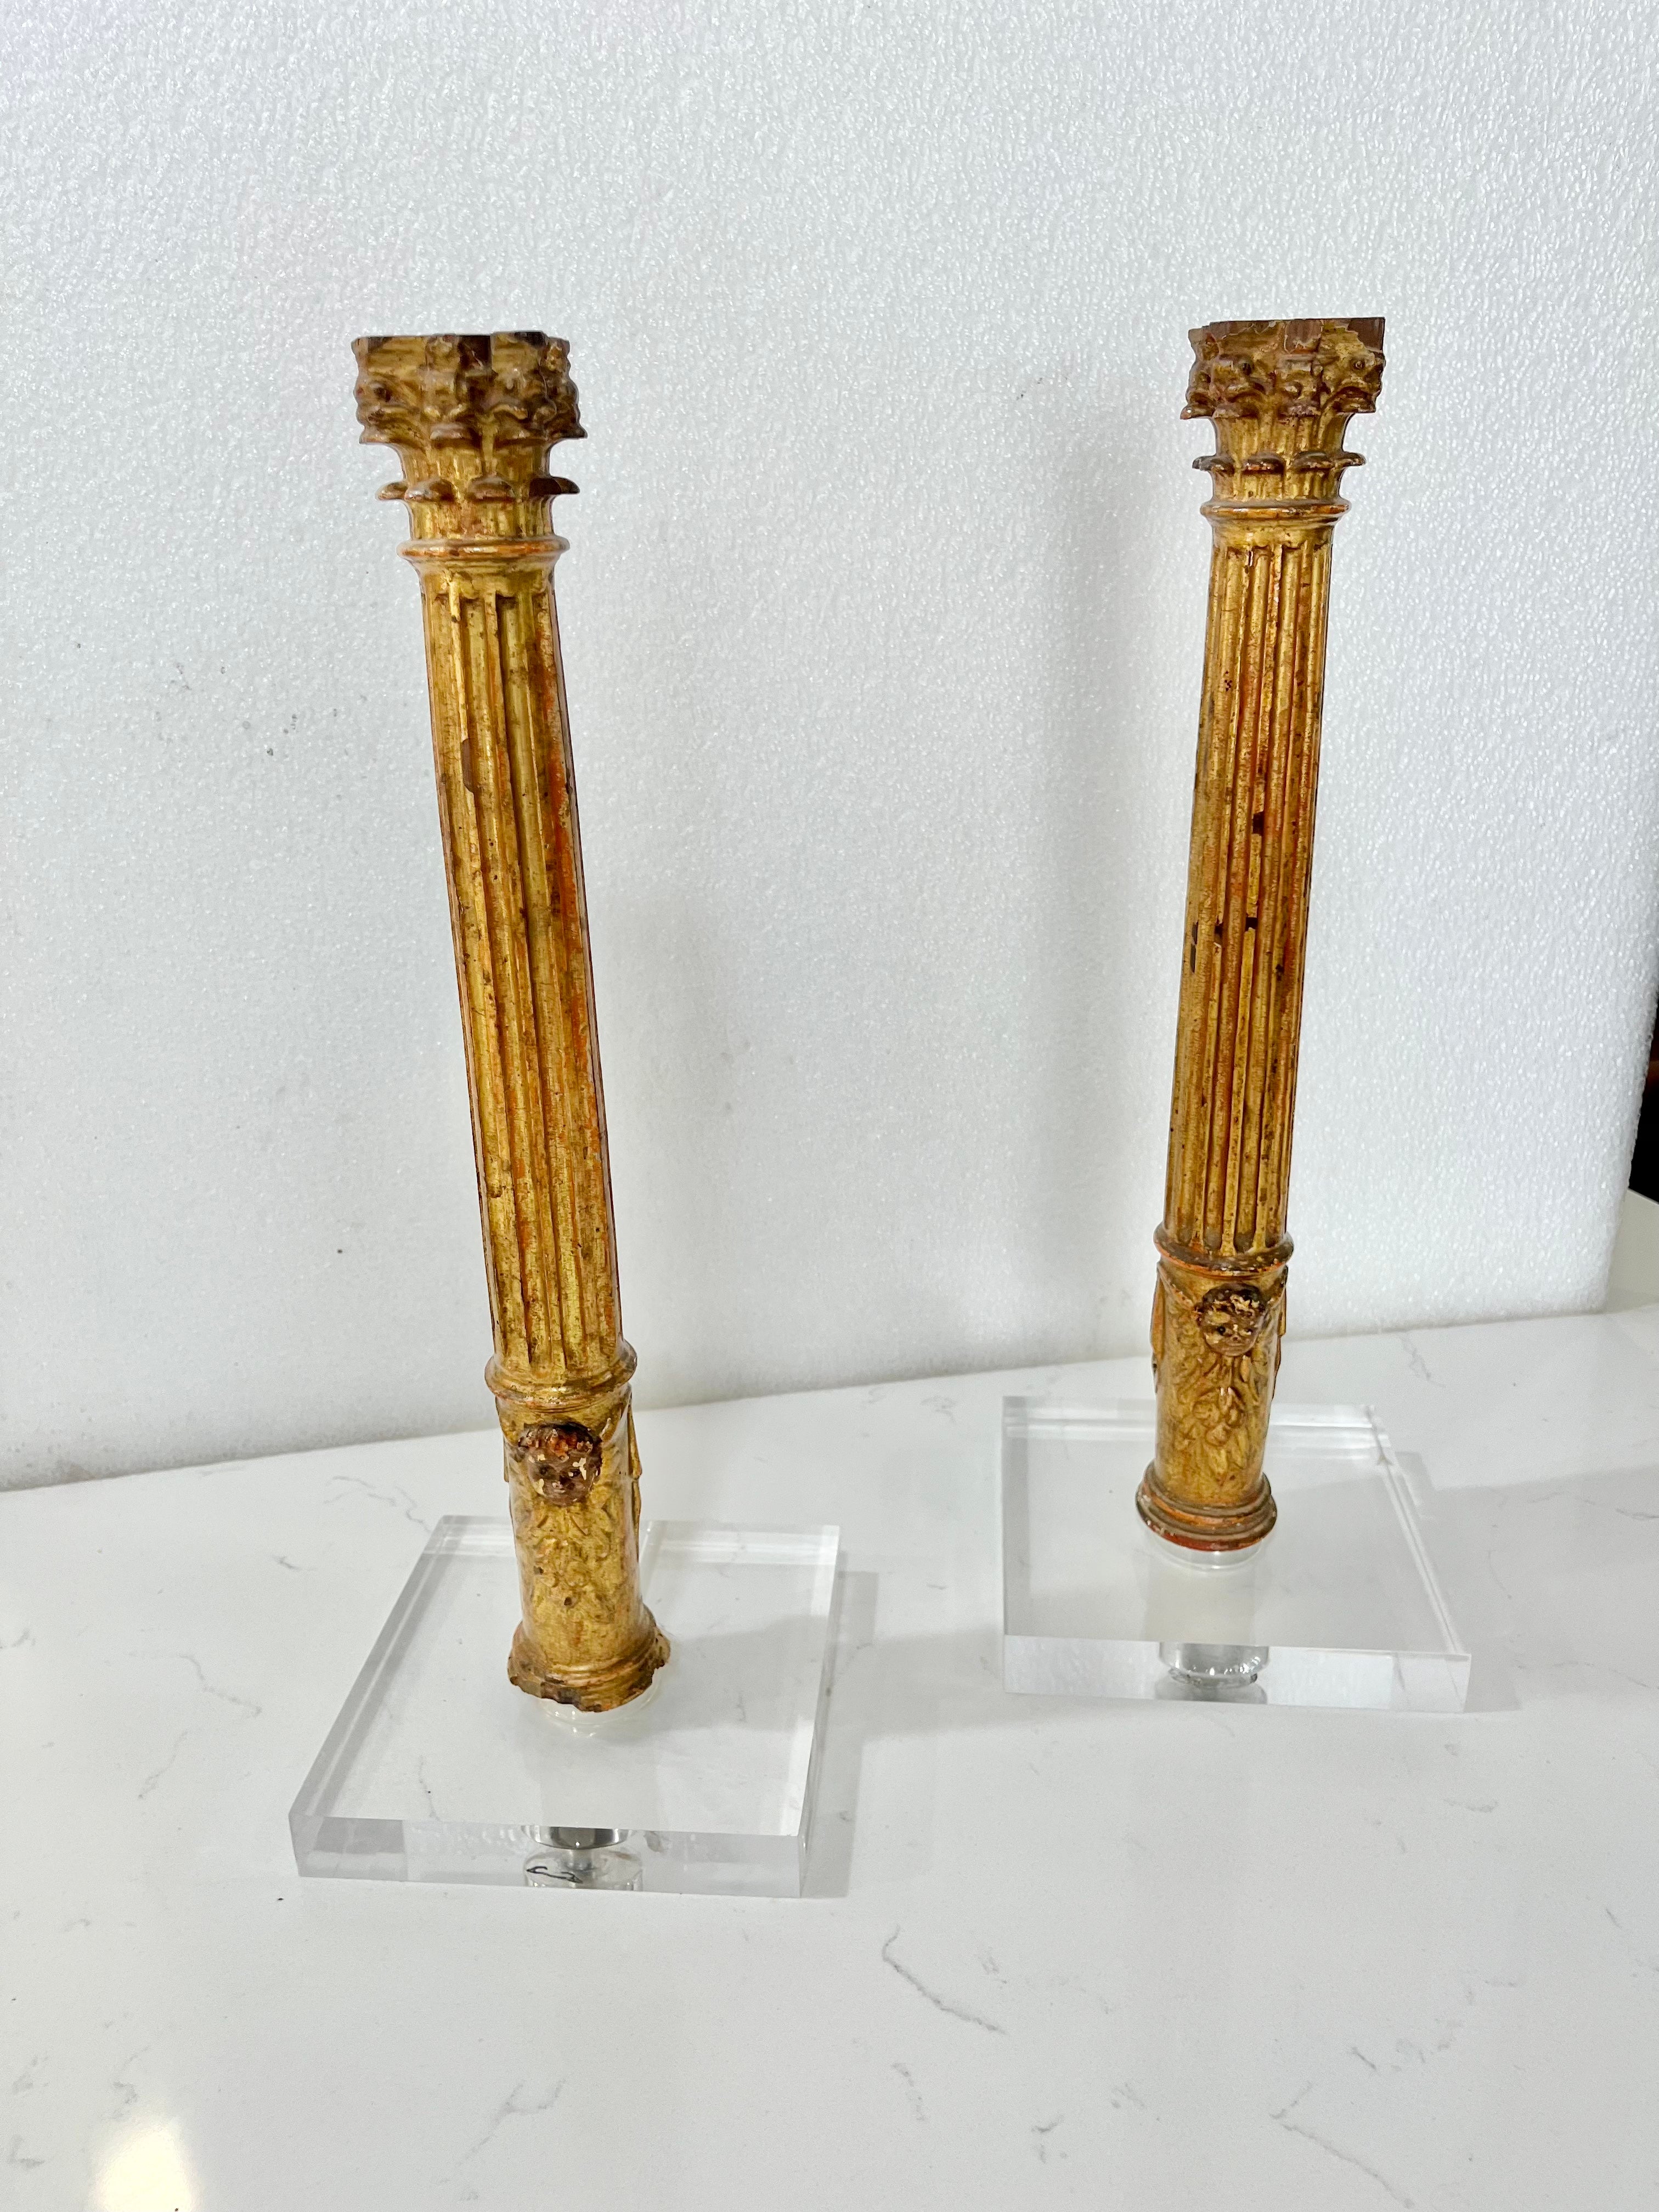 Paire de souvenirs en bois doré joliment sculptés de colonnes cannelées à chapiteaux corinthiens, datant de la période du Grand Tour au 19e siècle, maintenant montés sur des bases contemporaines en acrylique avec un canal arrière pour le câblage de